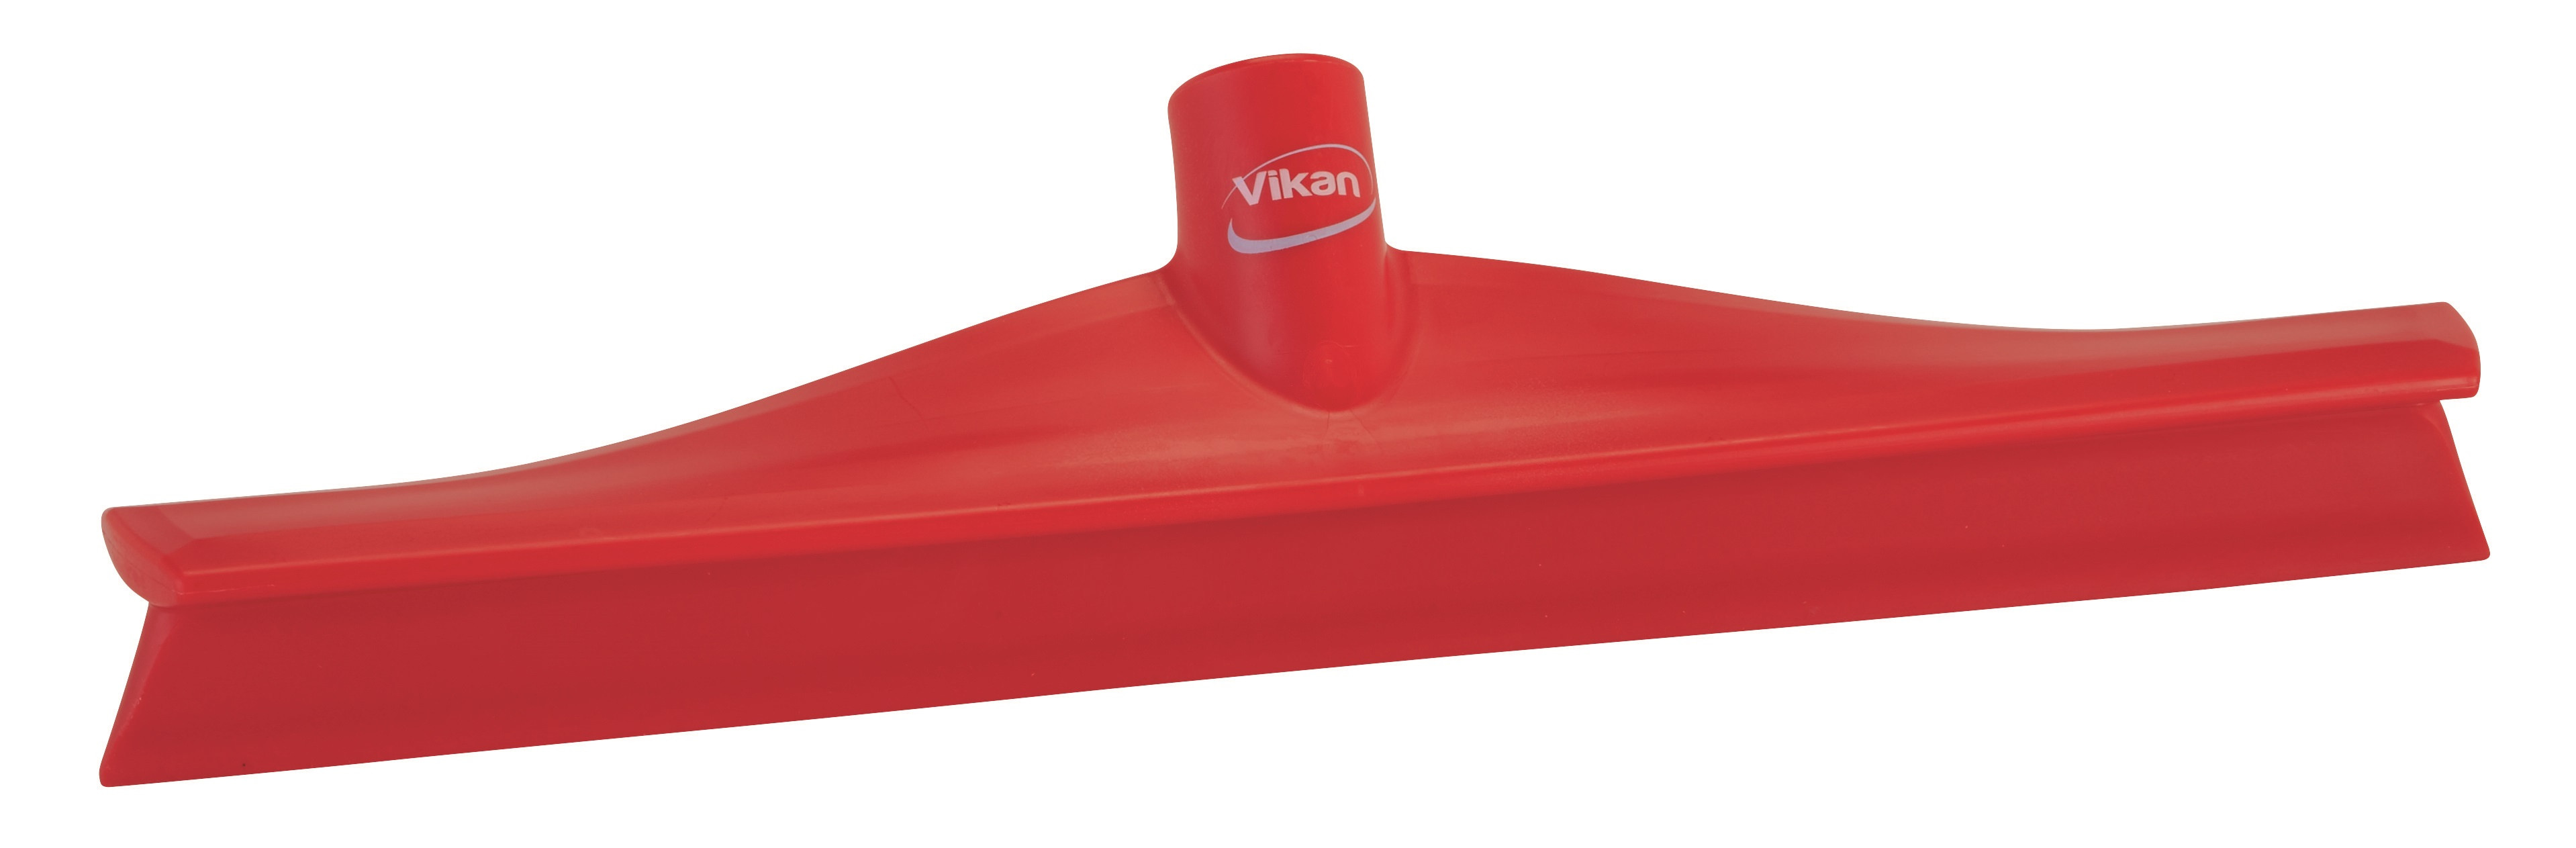 Billede af Vikan Skraber Ultra hygiejnisk 400 mm Rød Enkeltlæbe (71404)